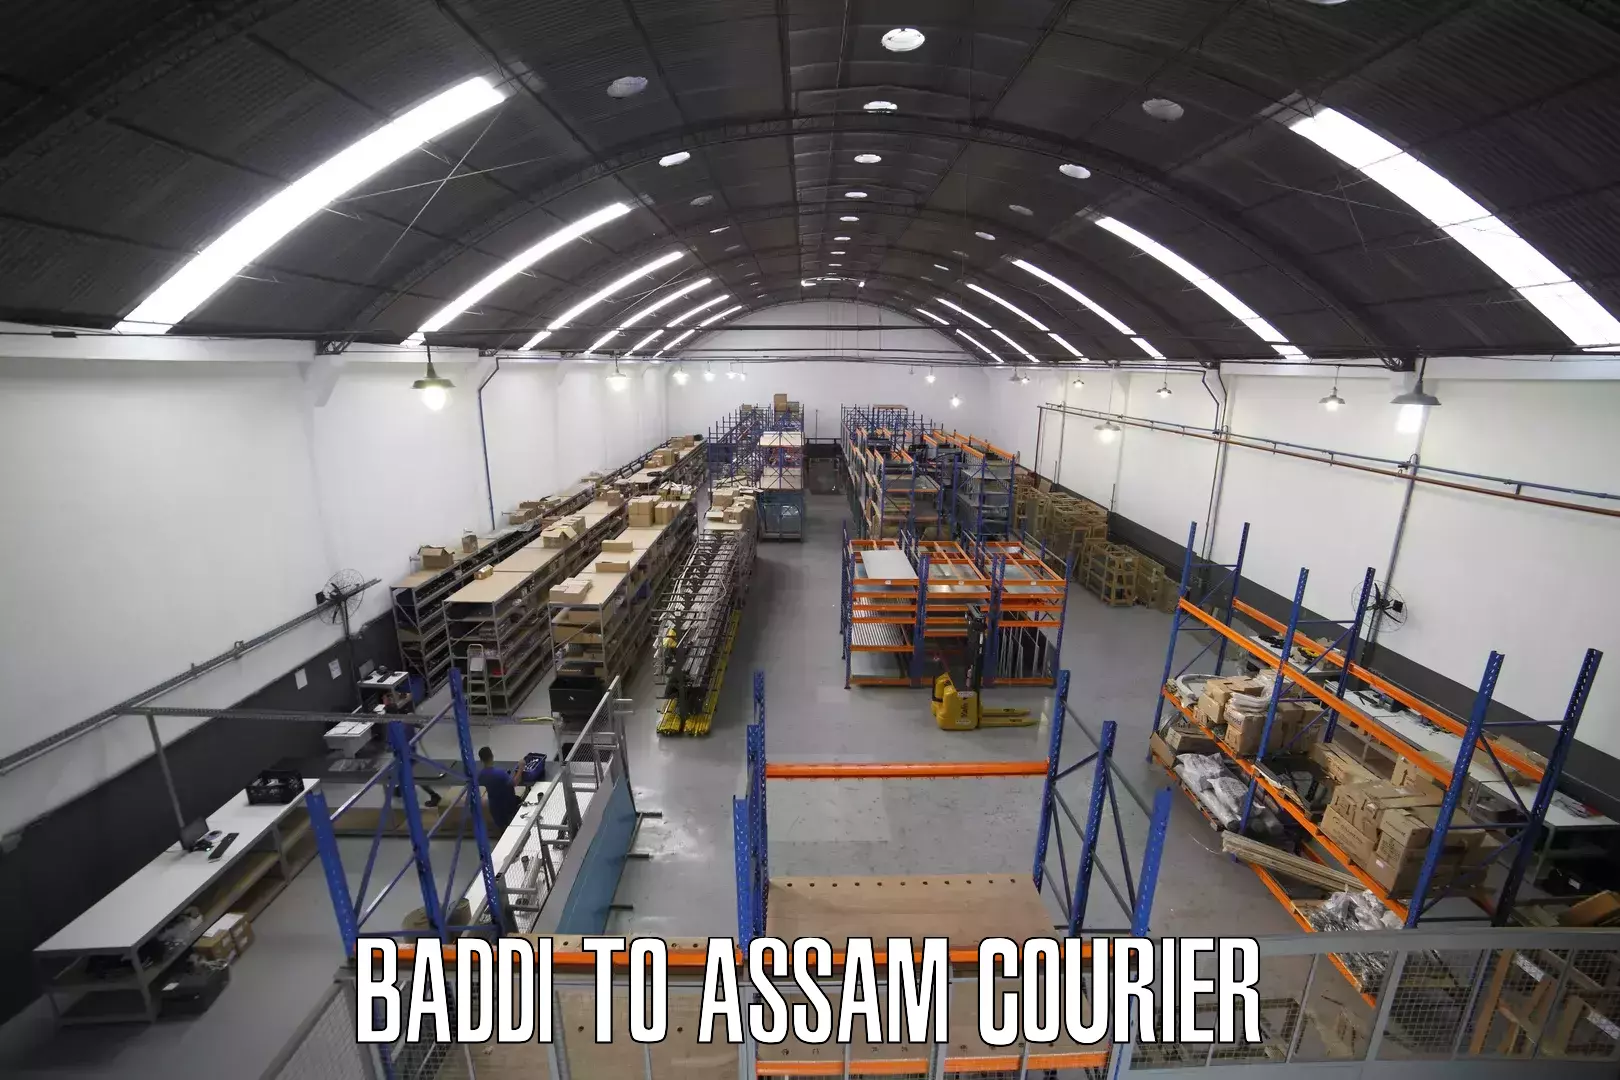 Comprehensive shipping network Baddi to Tinsukia